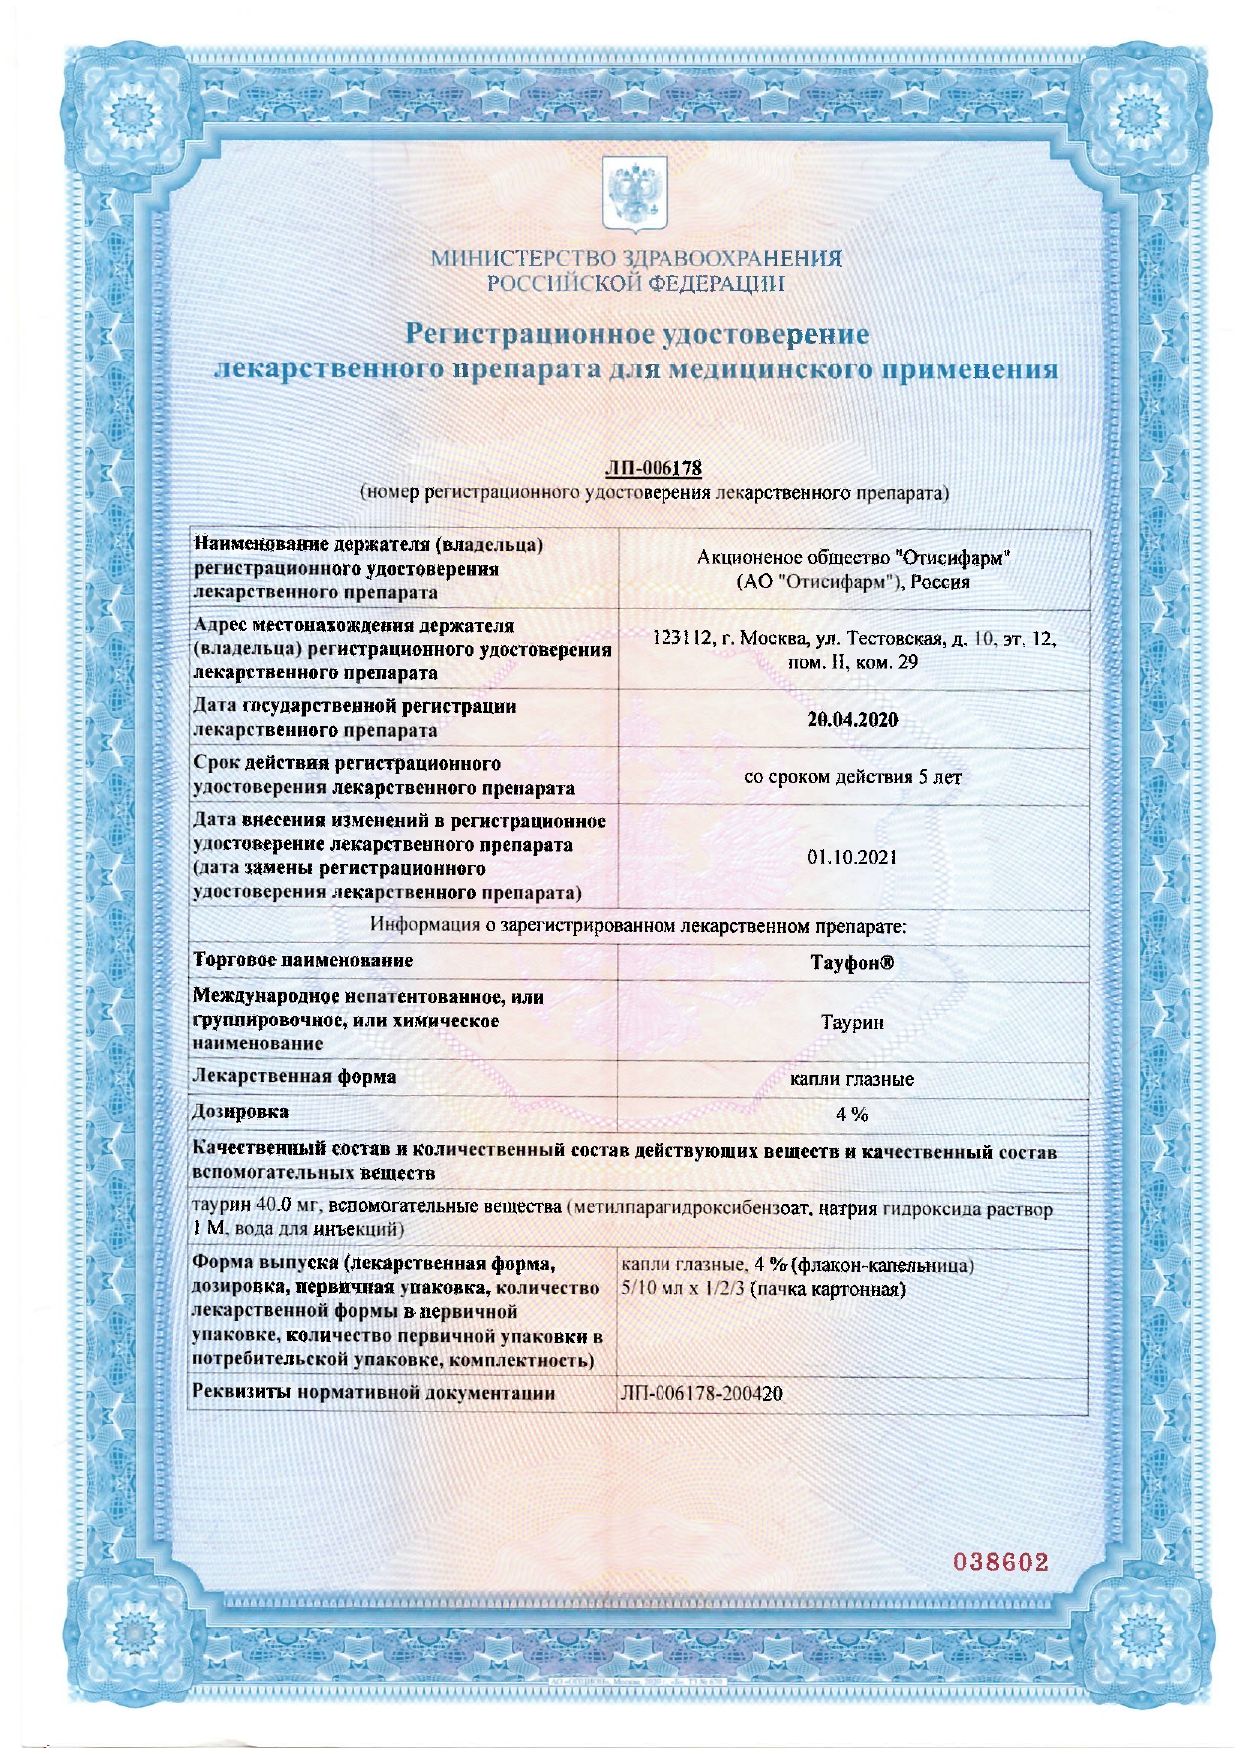 Тауфон сертификат